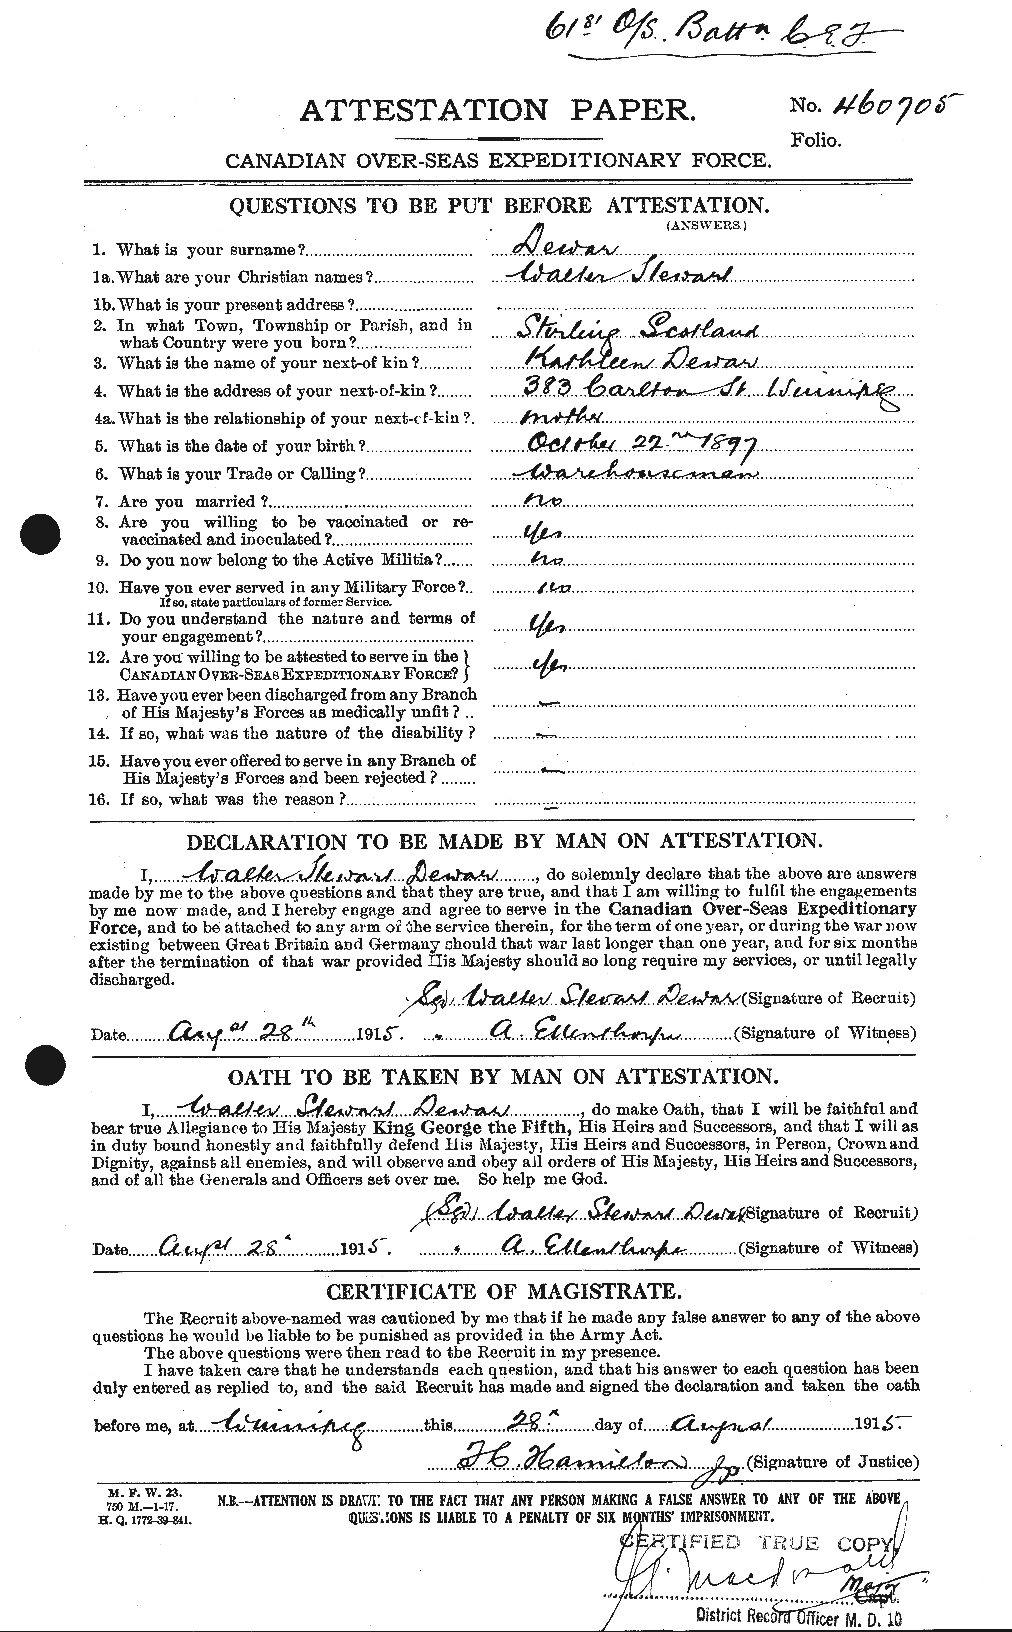 Dossiers du Personnel de la Première Guerre mondiale - CEC 288681a